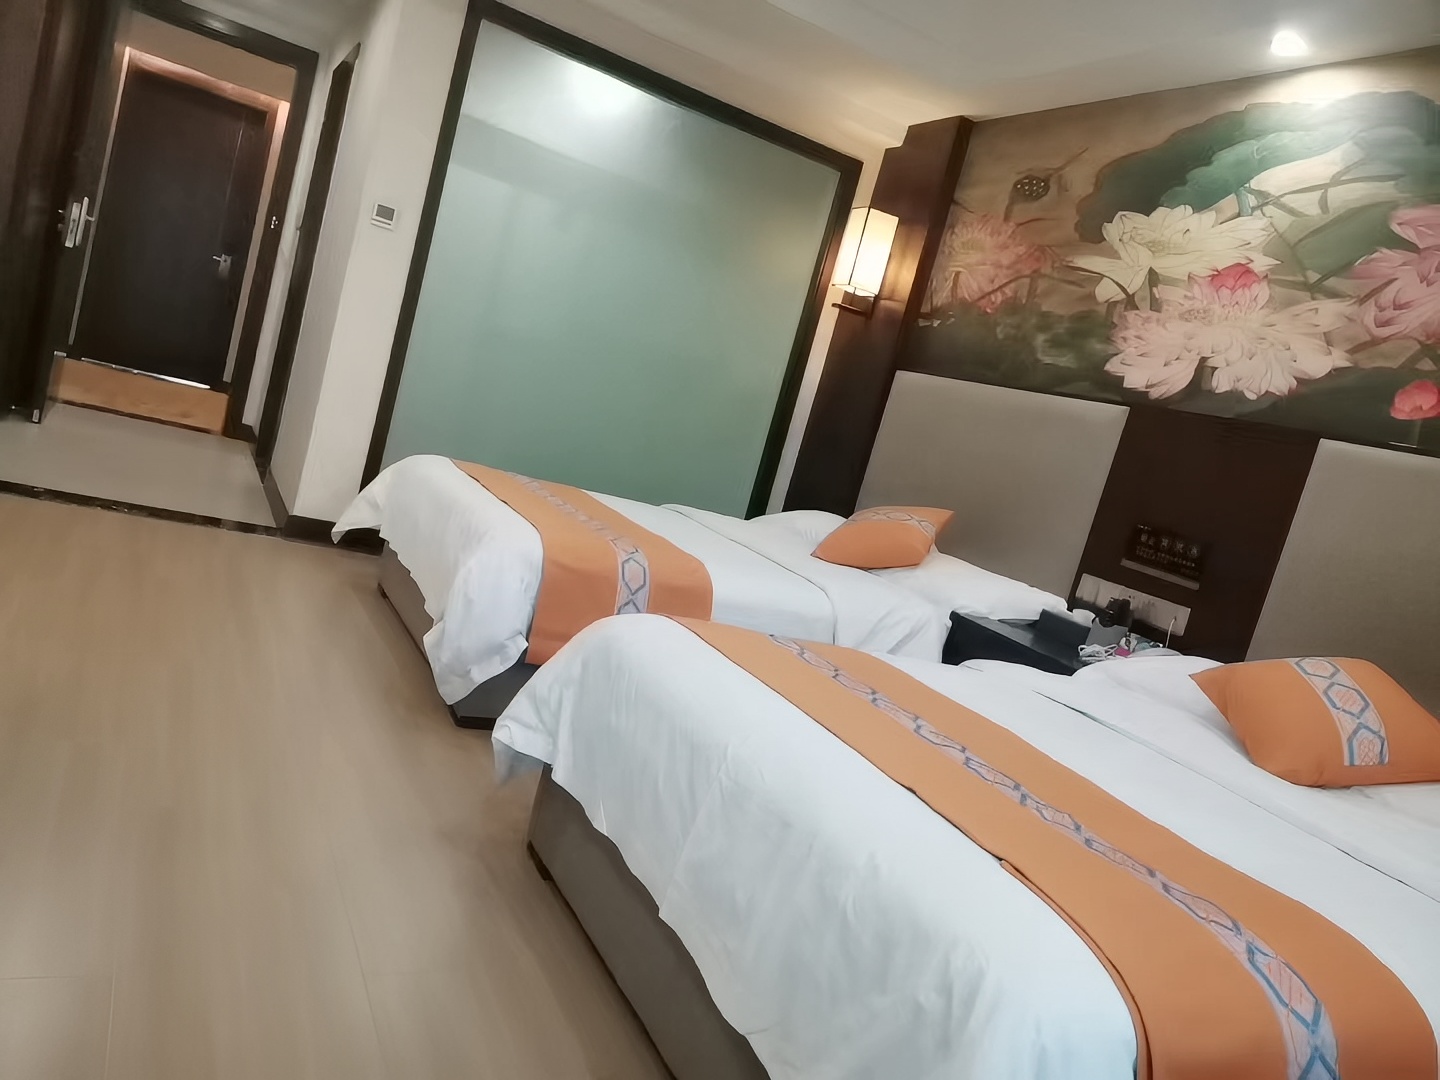 又一次来莲花县，莲花万福大酒店第二次入住，酒店临街停车方便，房间也比较宽敞，而且干净整洁，特别是前台